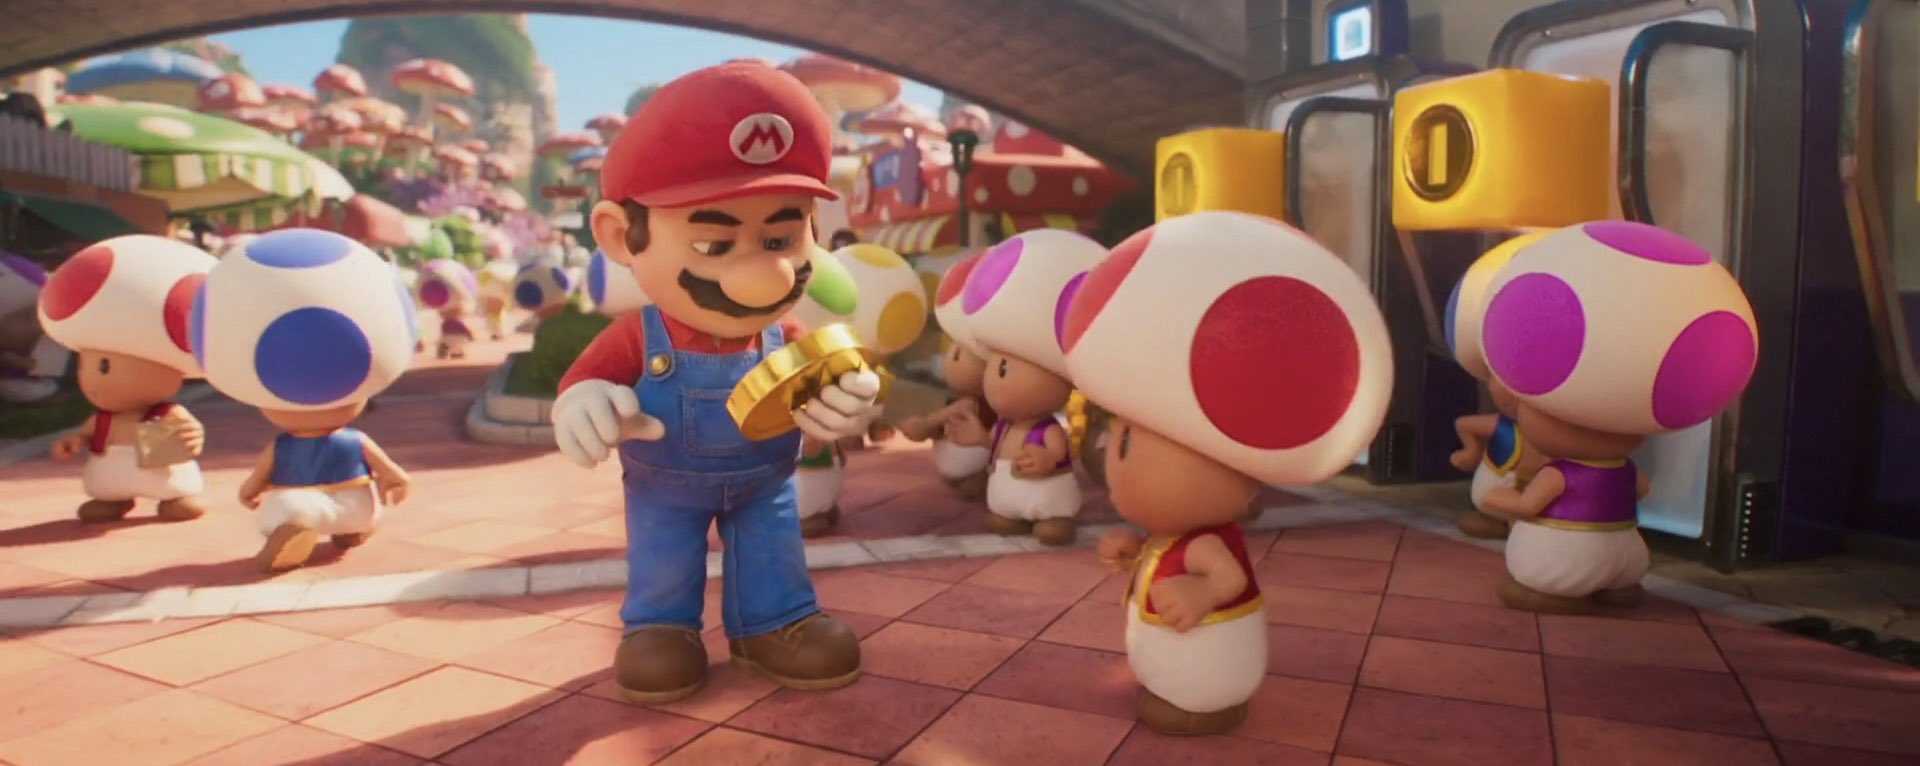 Foto de Conoce más del Mushroom Kingdom con un nuevo avance e imágenes de Super Mario Bros. La Película